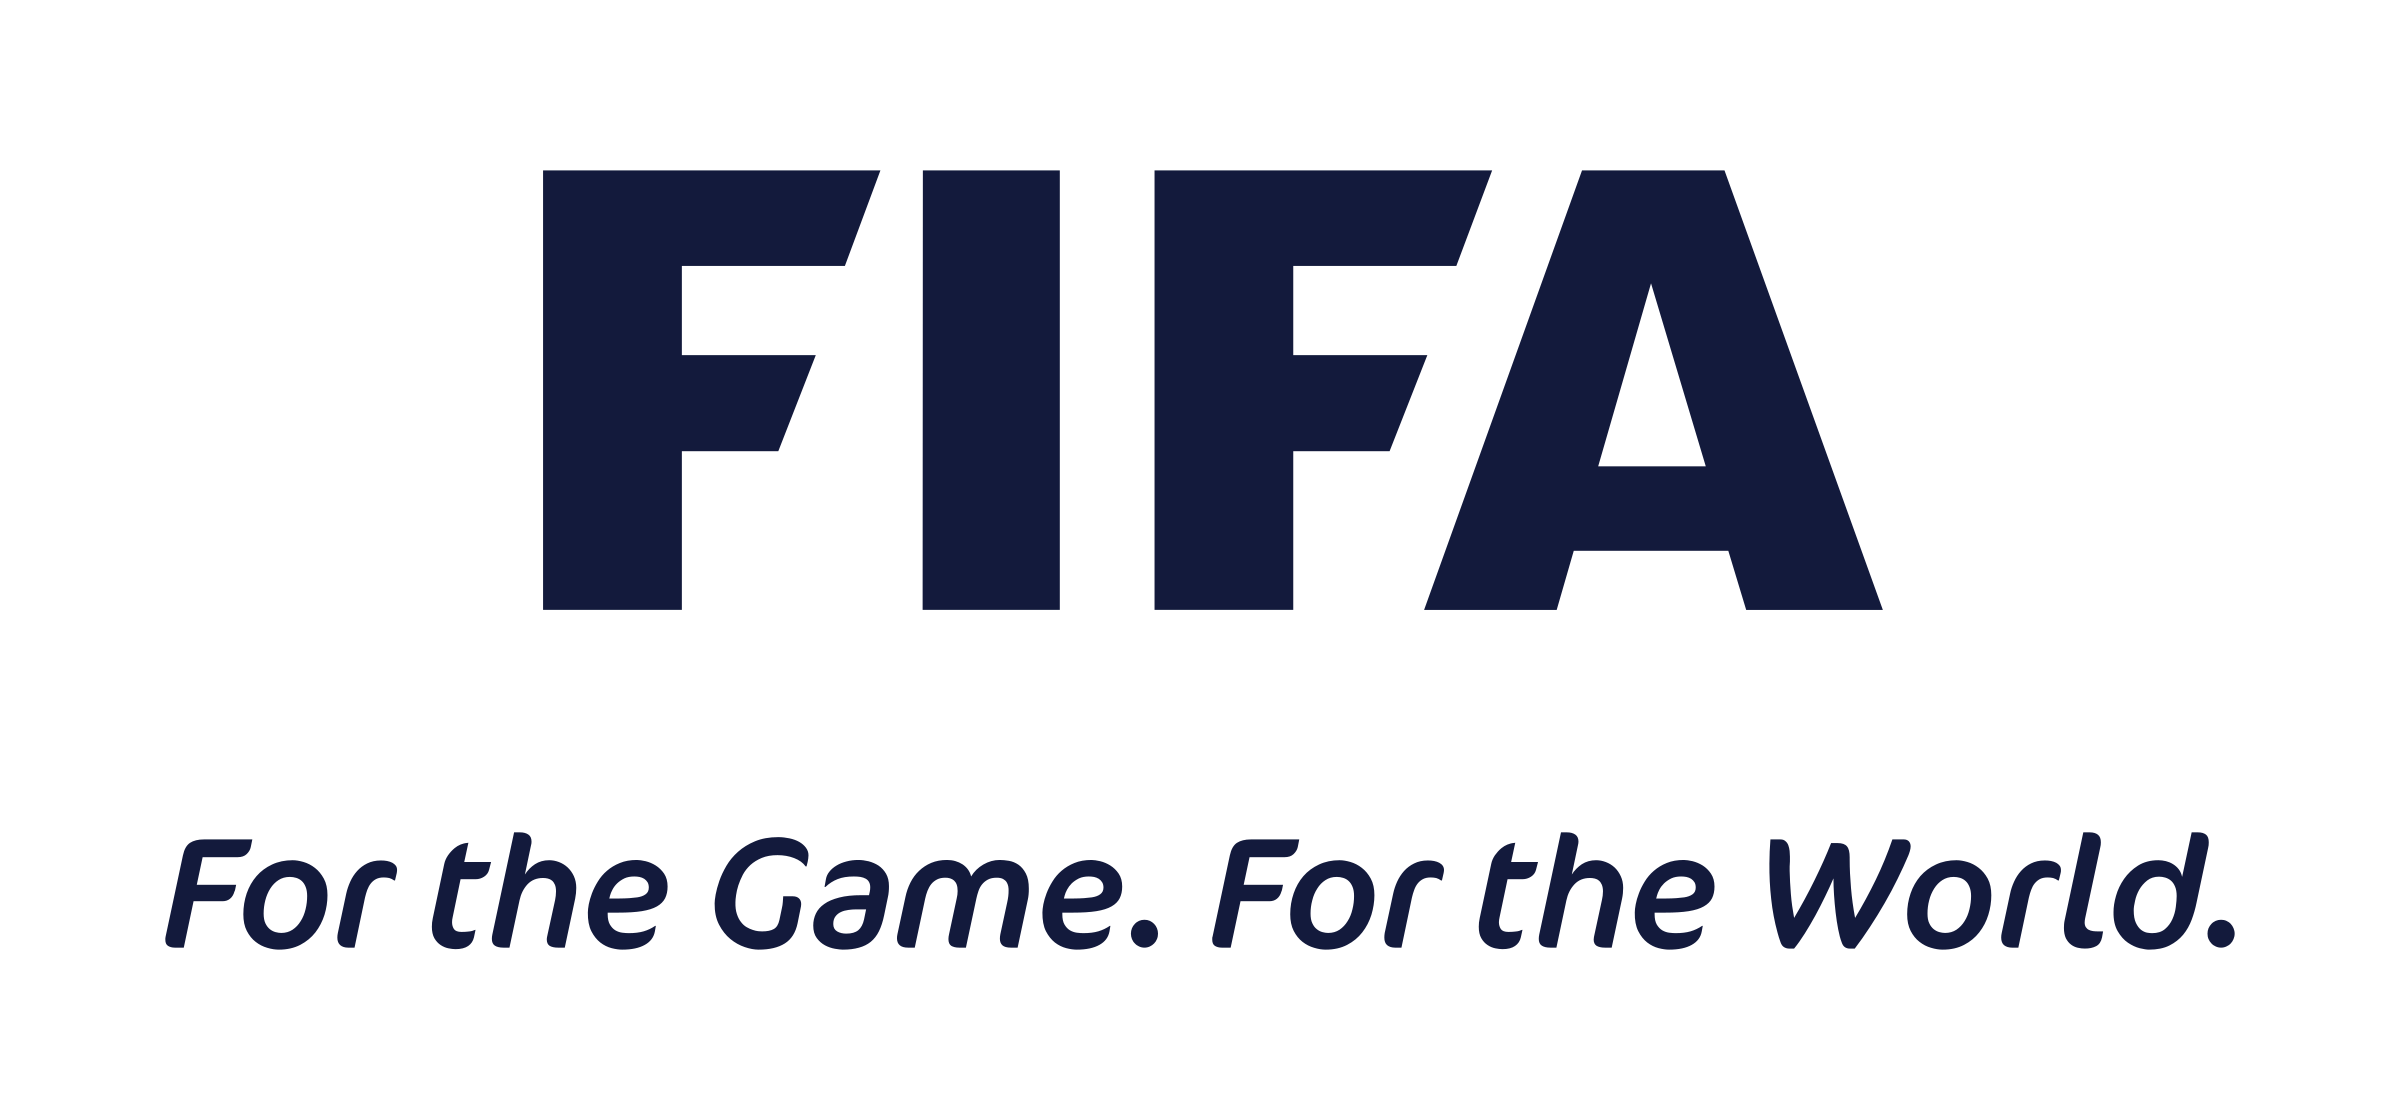 2014 Fifa World Cup 2018 Fifa